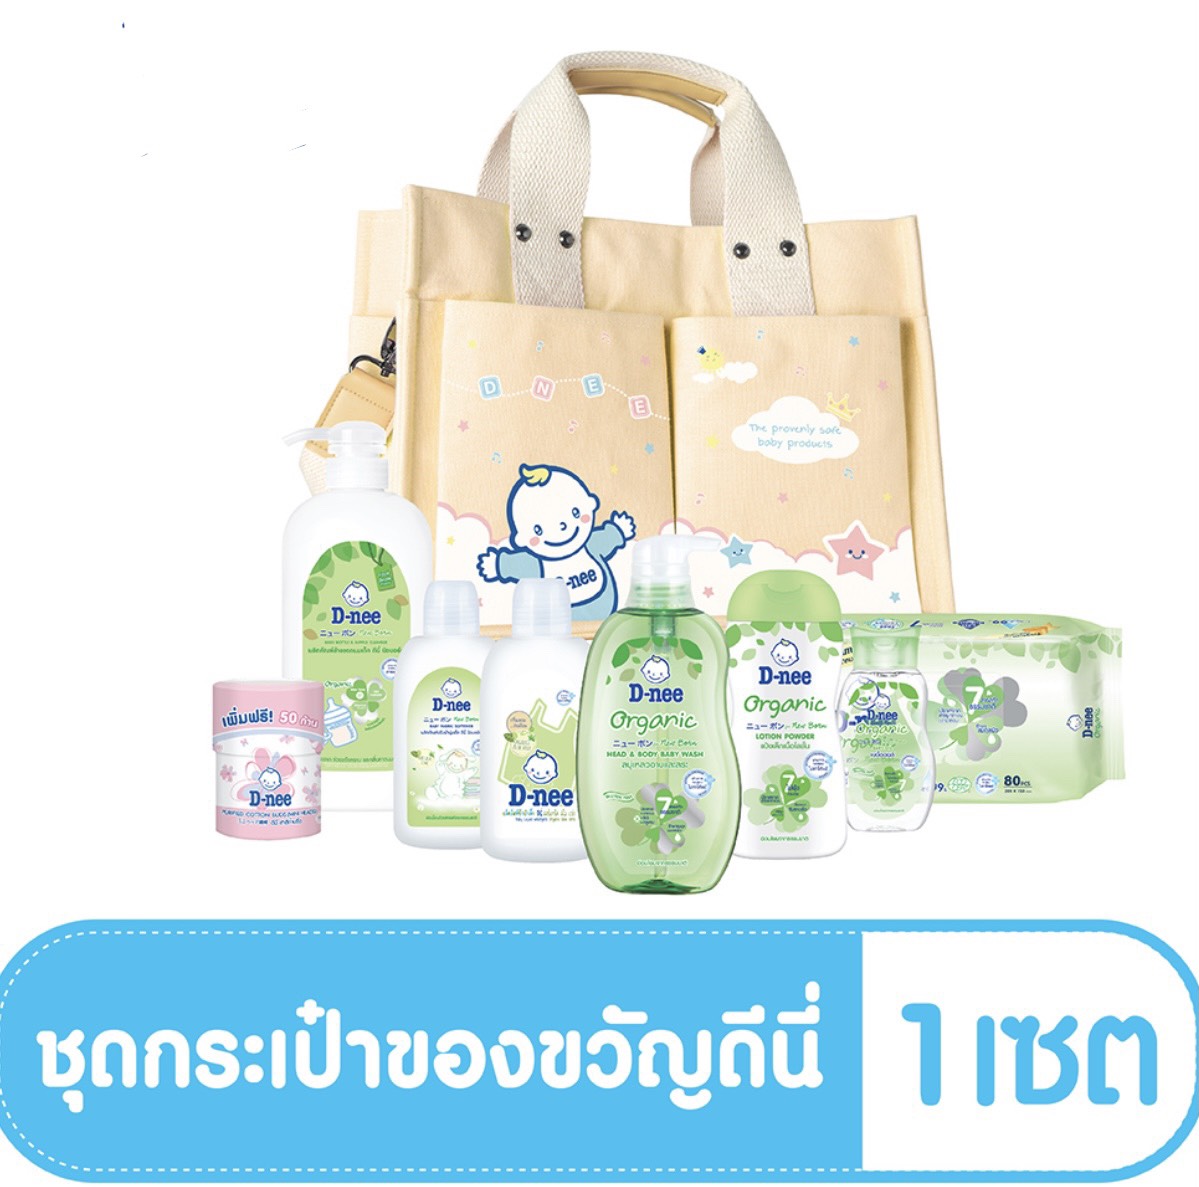 (มีคูปองส่งฟรี) D-nee ชุดผลิตภัณฑ์เด็ก ดีนี่ Organic พร้อมกระเป๋า สีน้ำตาล จำนวน8ชิ้น1ชุด